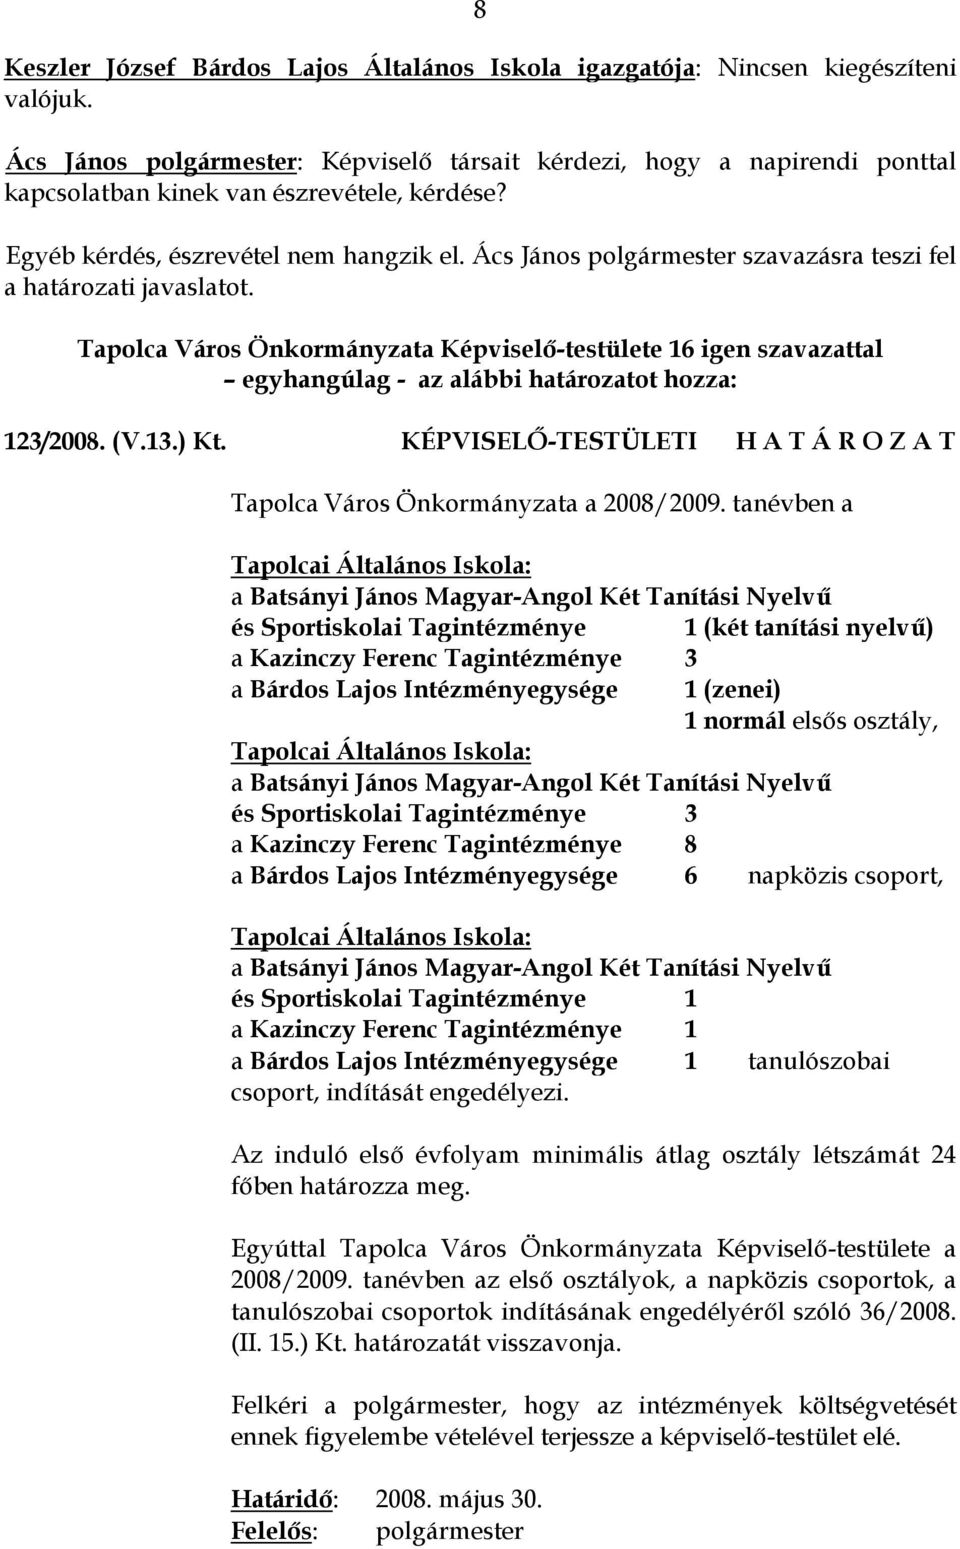 Ács János polgármester szavazásra teszi fel a határozati javaslatot. Tapolca Város Önkormányzata Képviselő-testülete 16 igen szavazattal 123/2008. (V.13.) Kt.